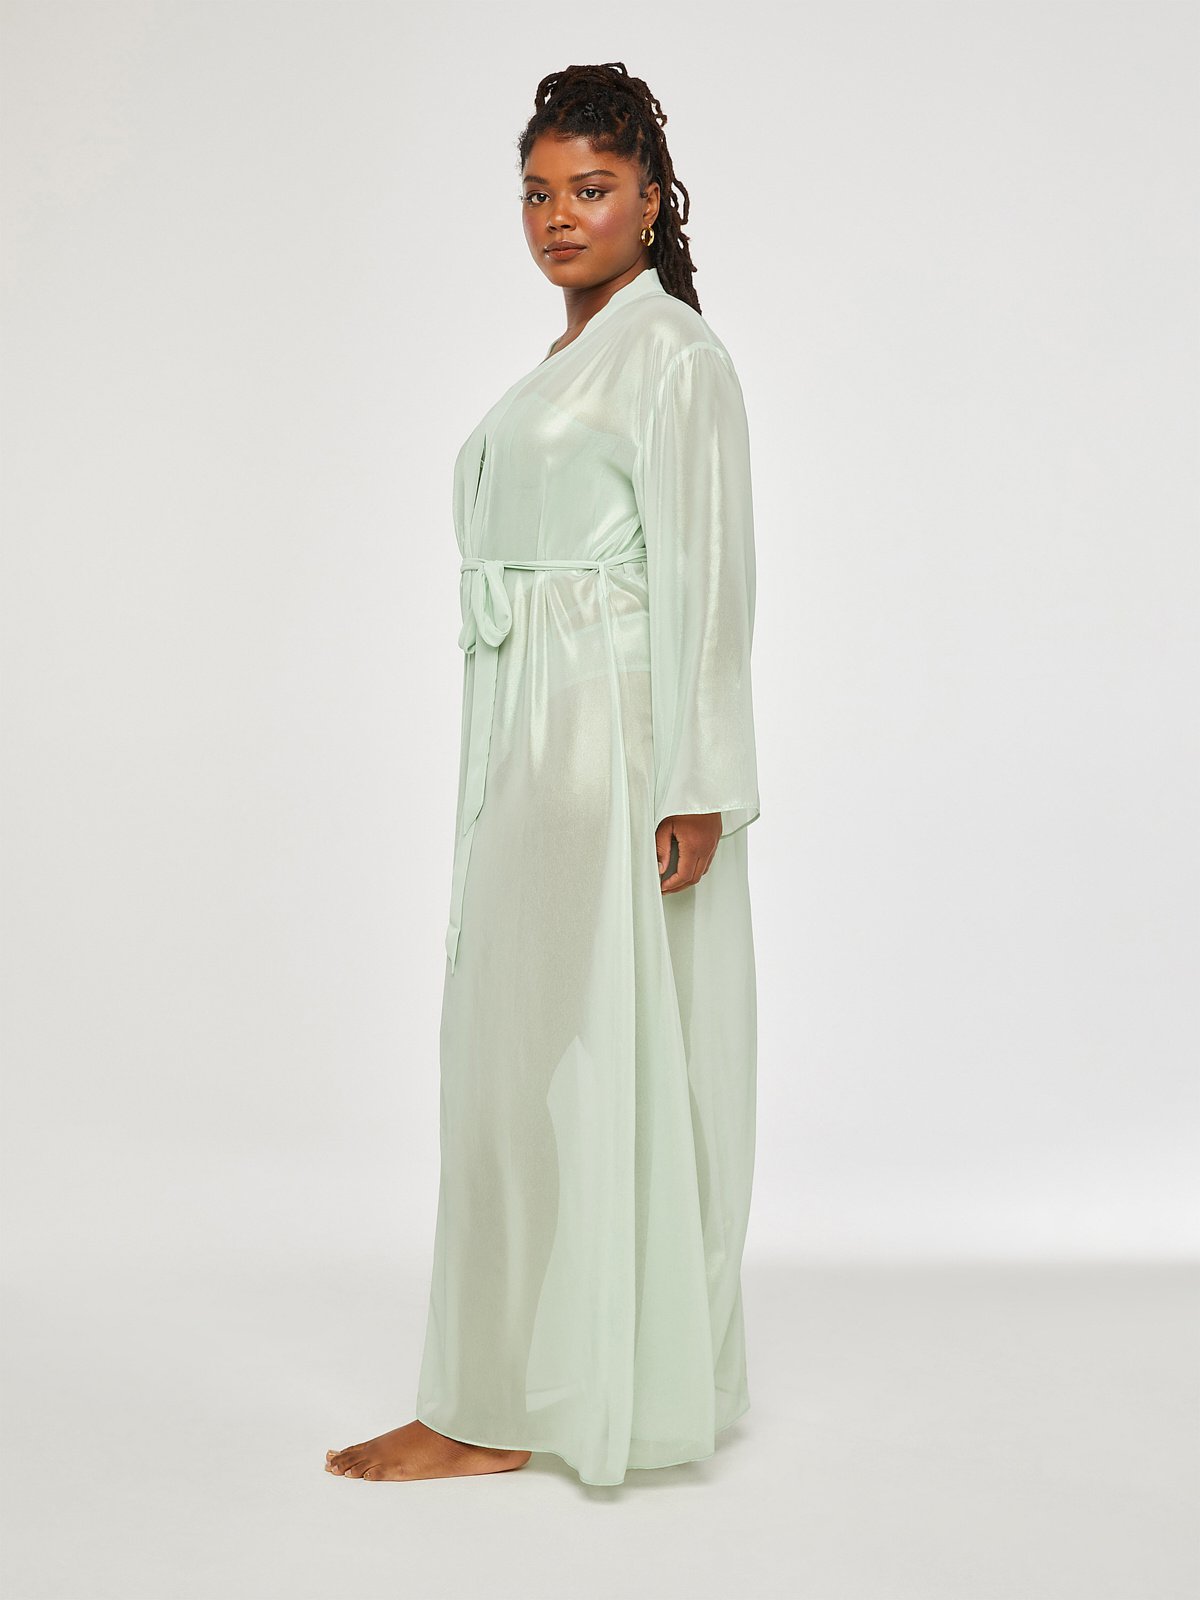 Women's Dressing Gowns | Cozy Wraps & Gowns | Pour Moi